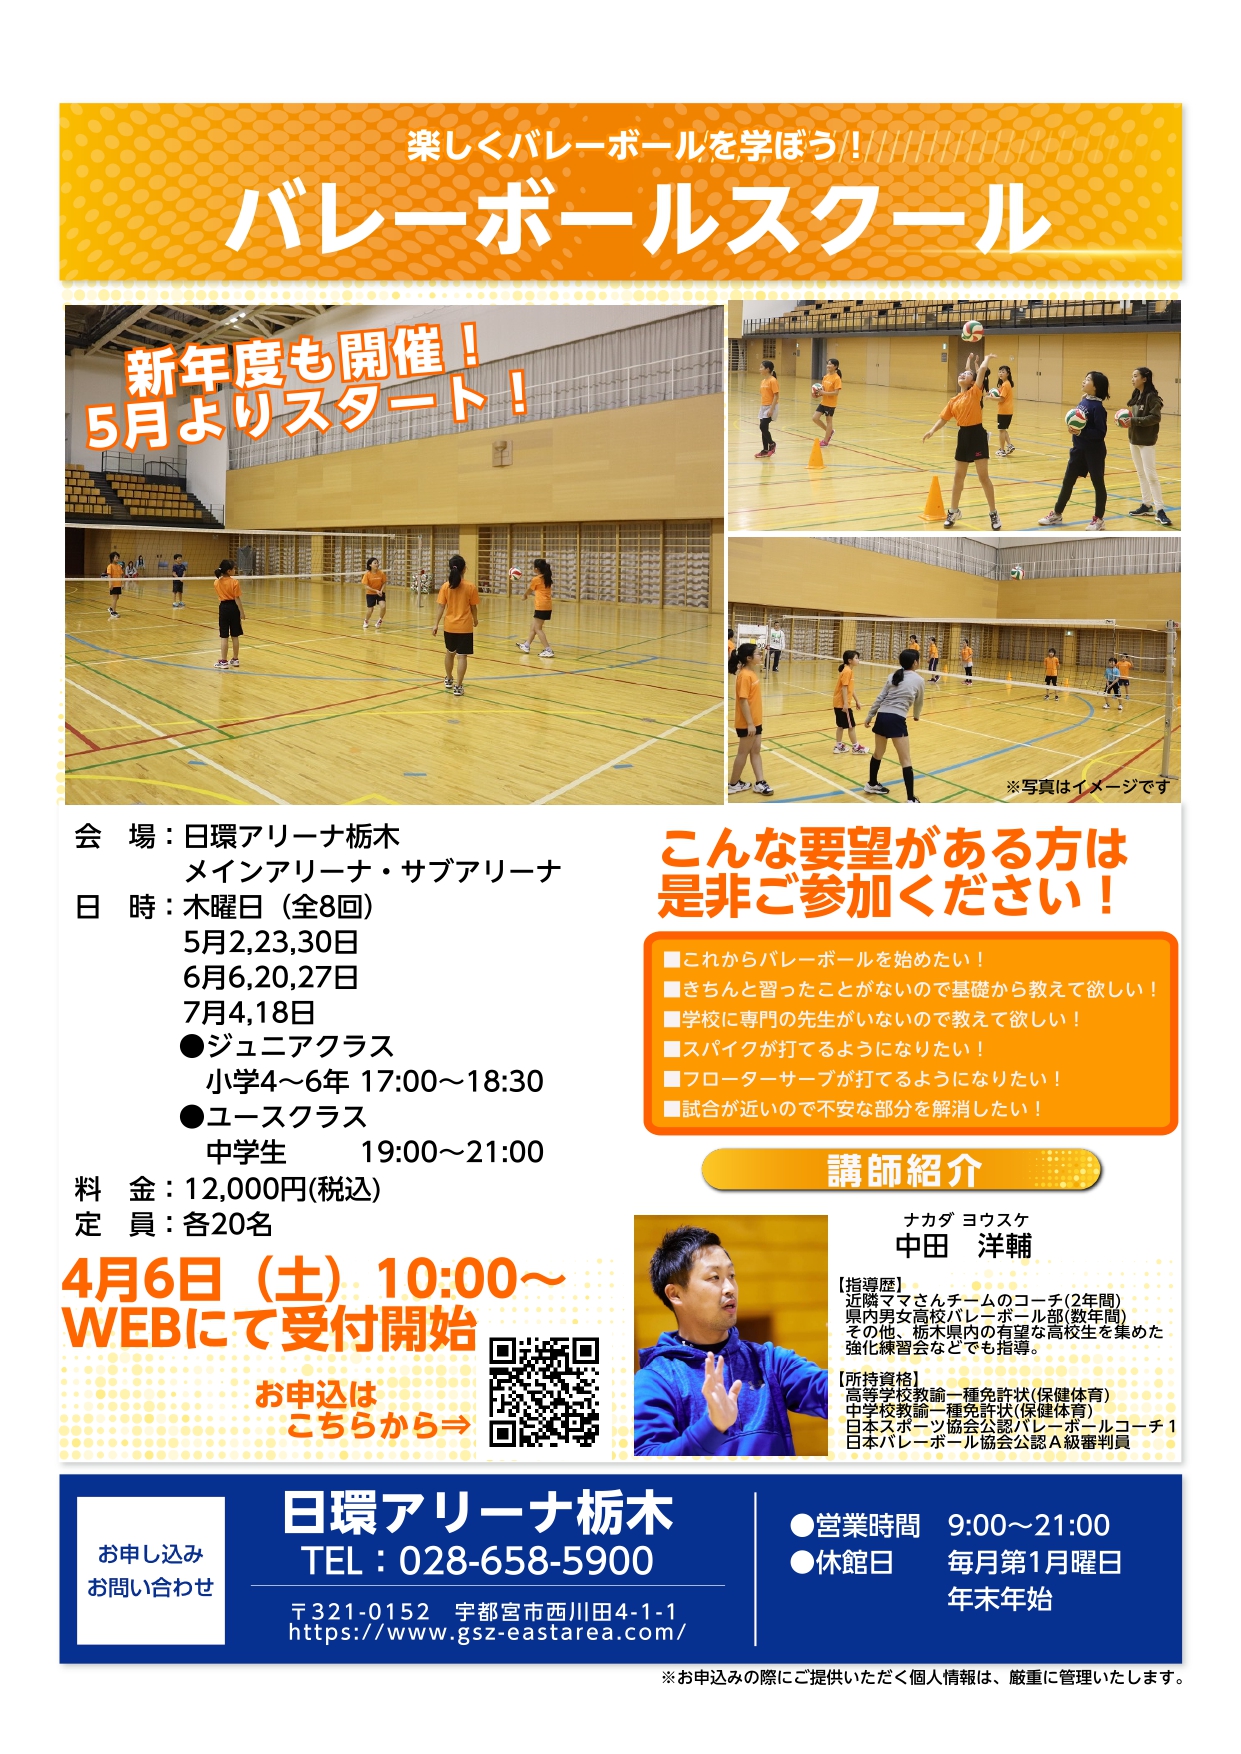 【スポーツ教室】小・中学生バレーボールスクール開催